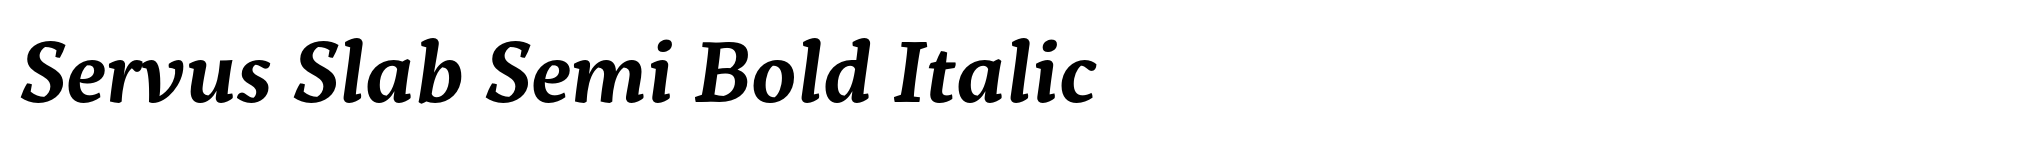 Servus Slab Semi Bold Italic image